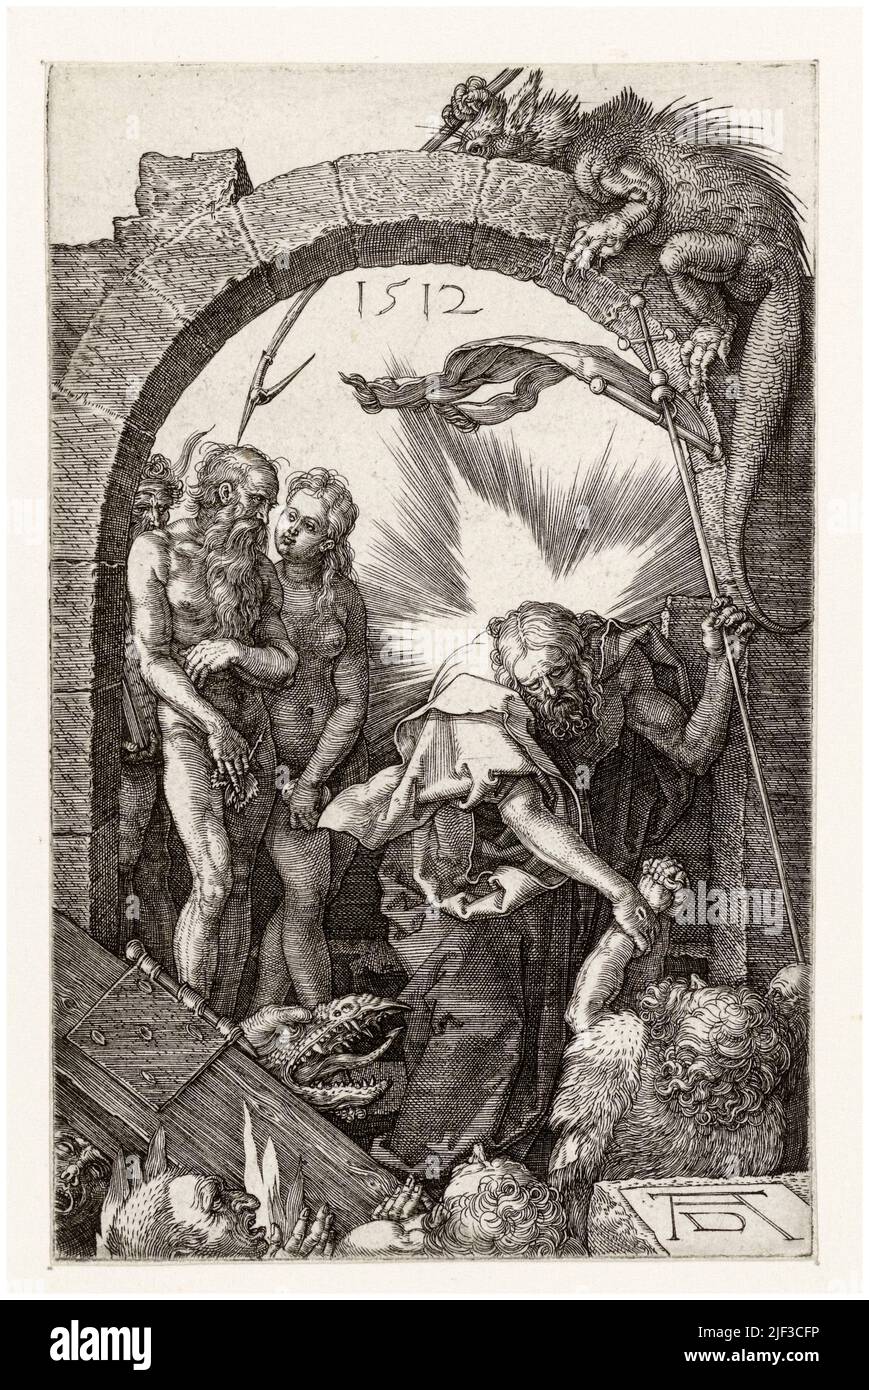 La discesa di Cristo nel Limbo, incisione dei primi 16th anni di Albrecht Durer, 1512 Foto Stock